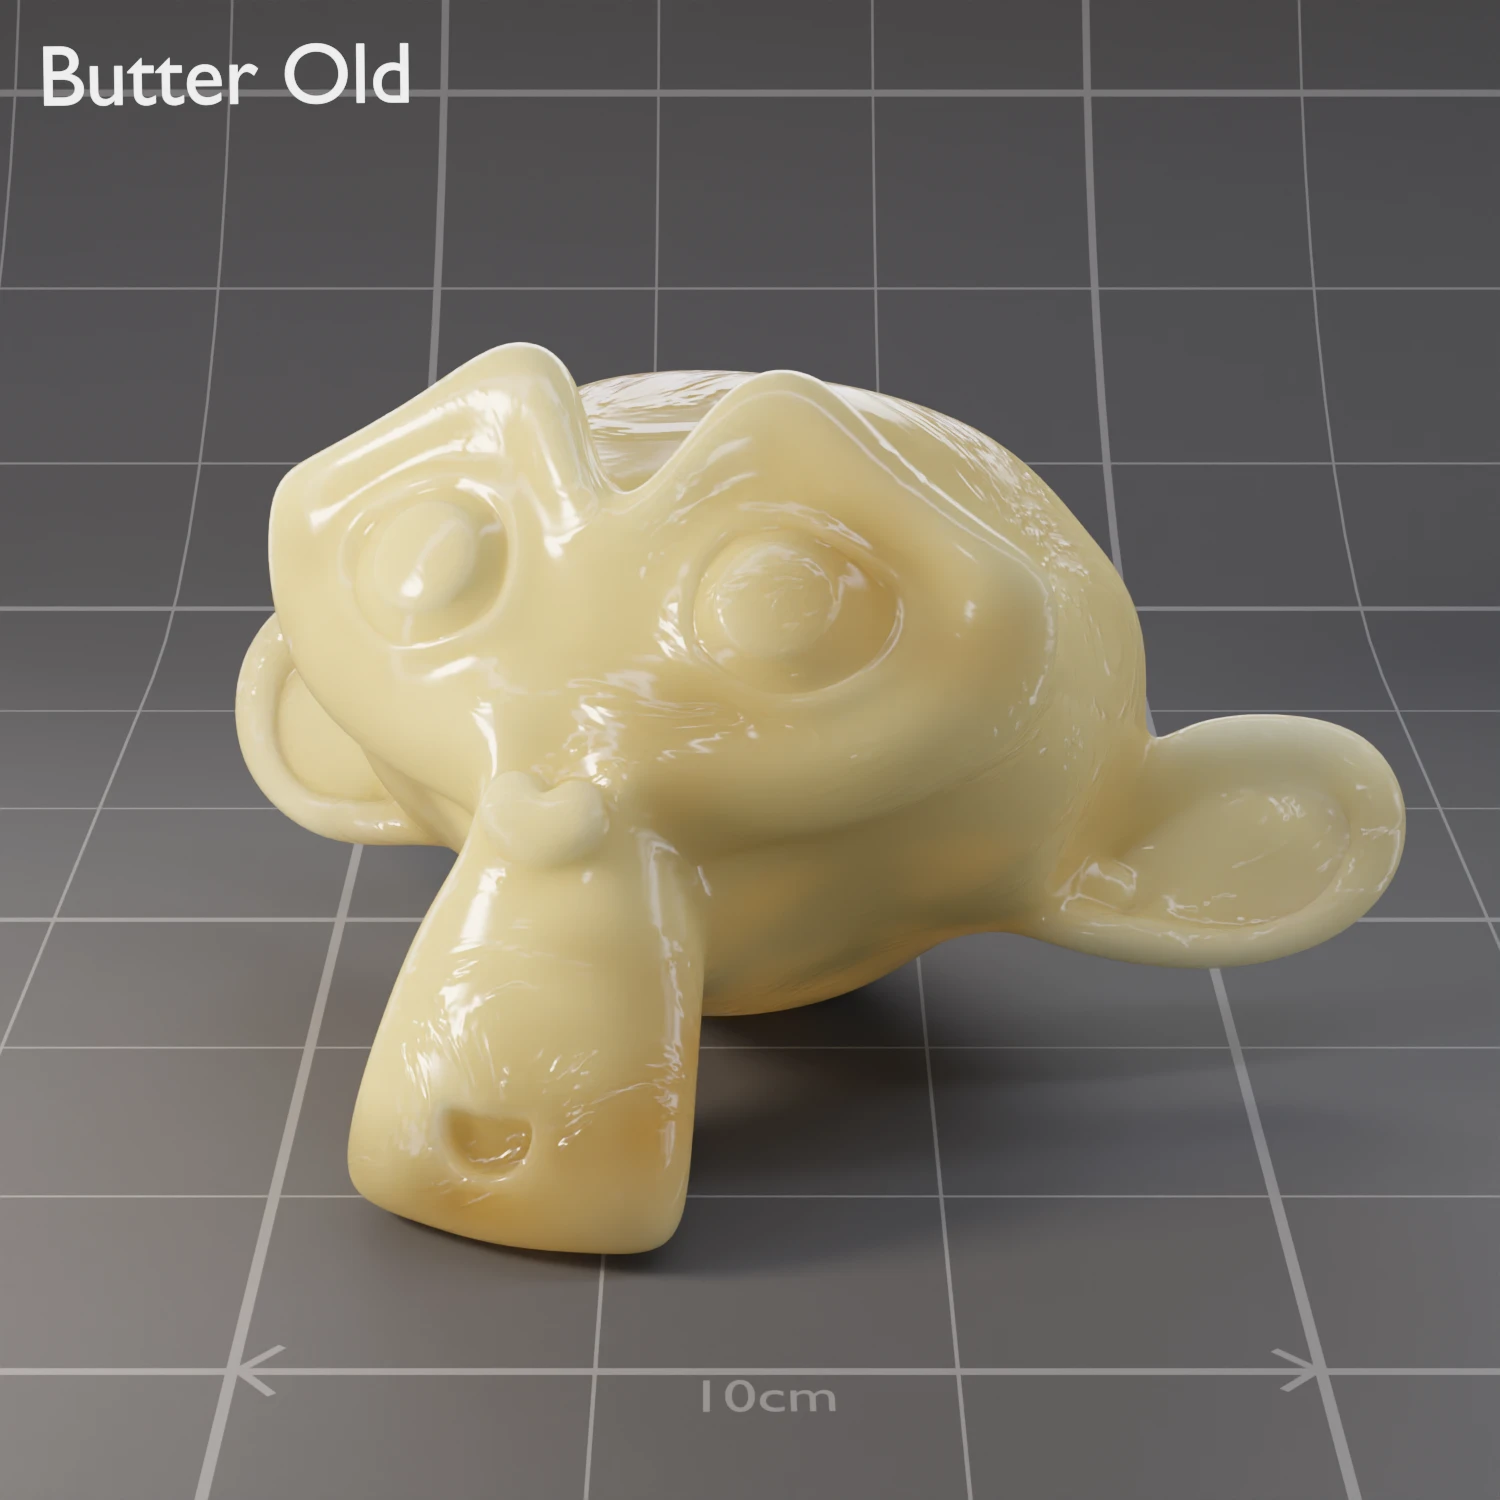 /pr/image/mats/Butter Old.WebP